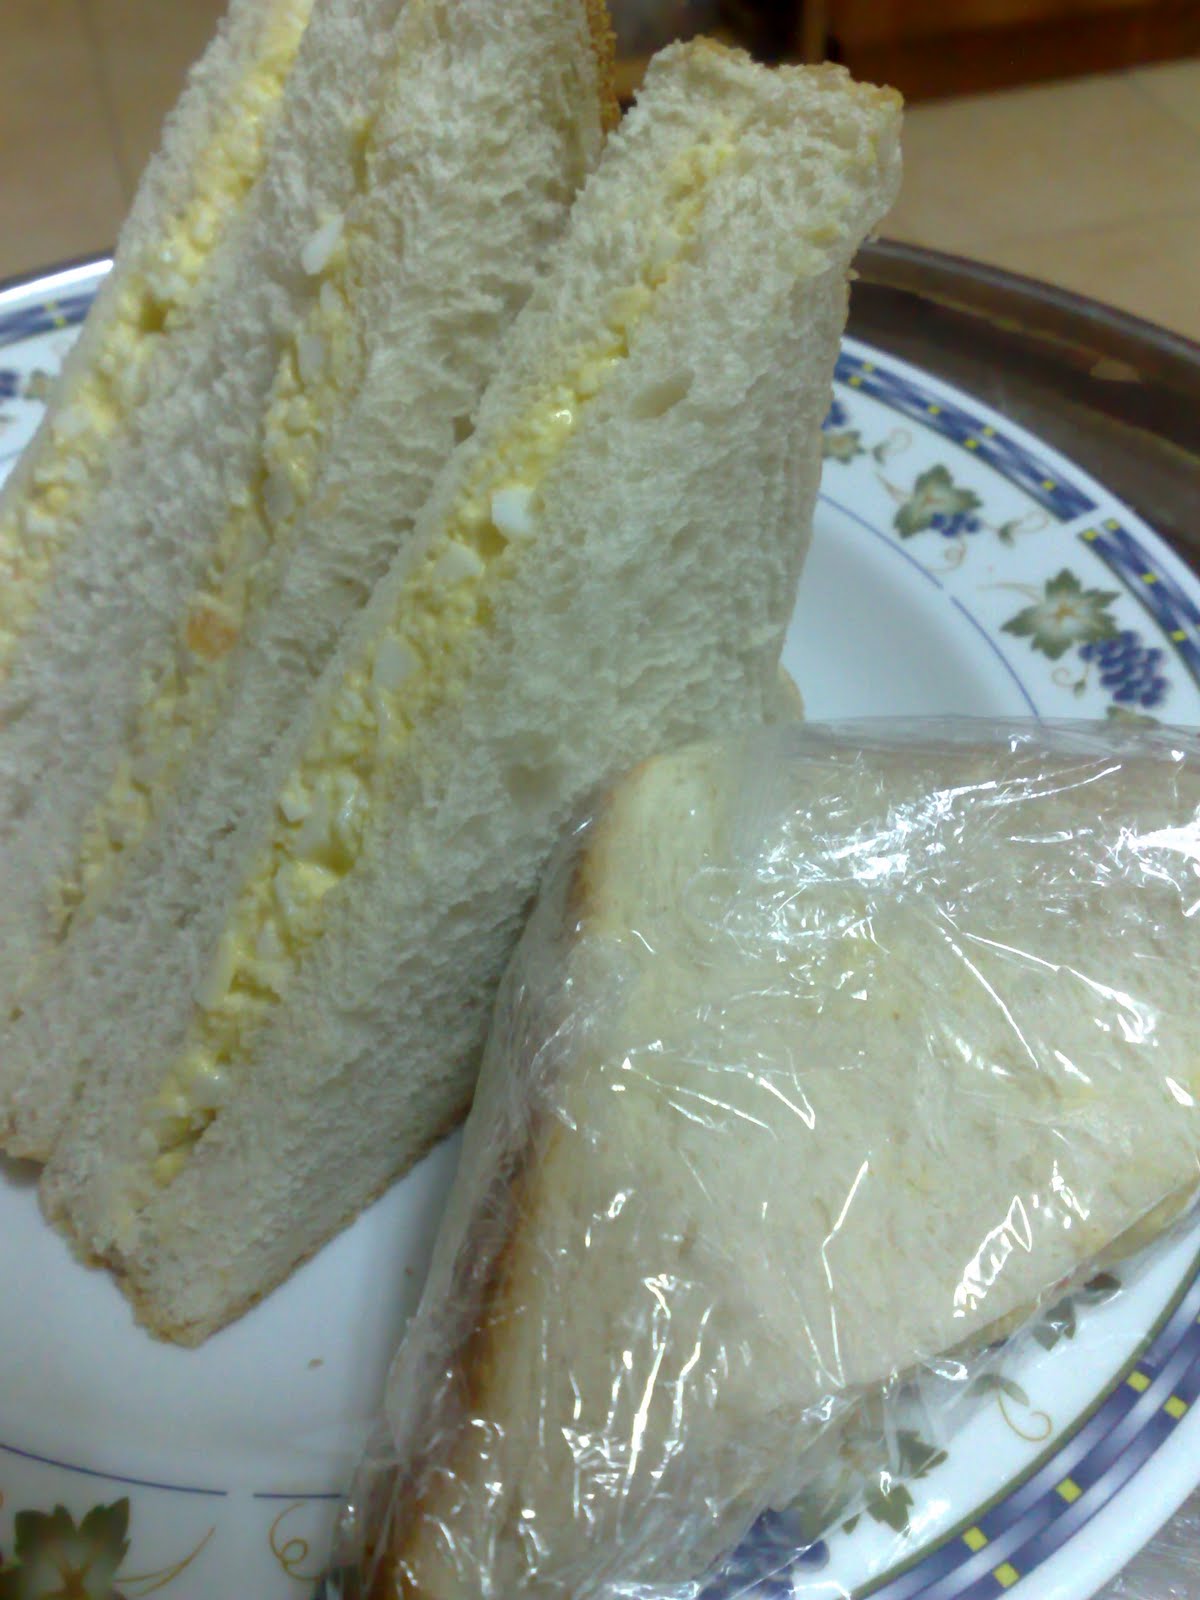 Gedung Belo&Nofa: Belo's Sandwich!!!